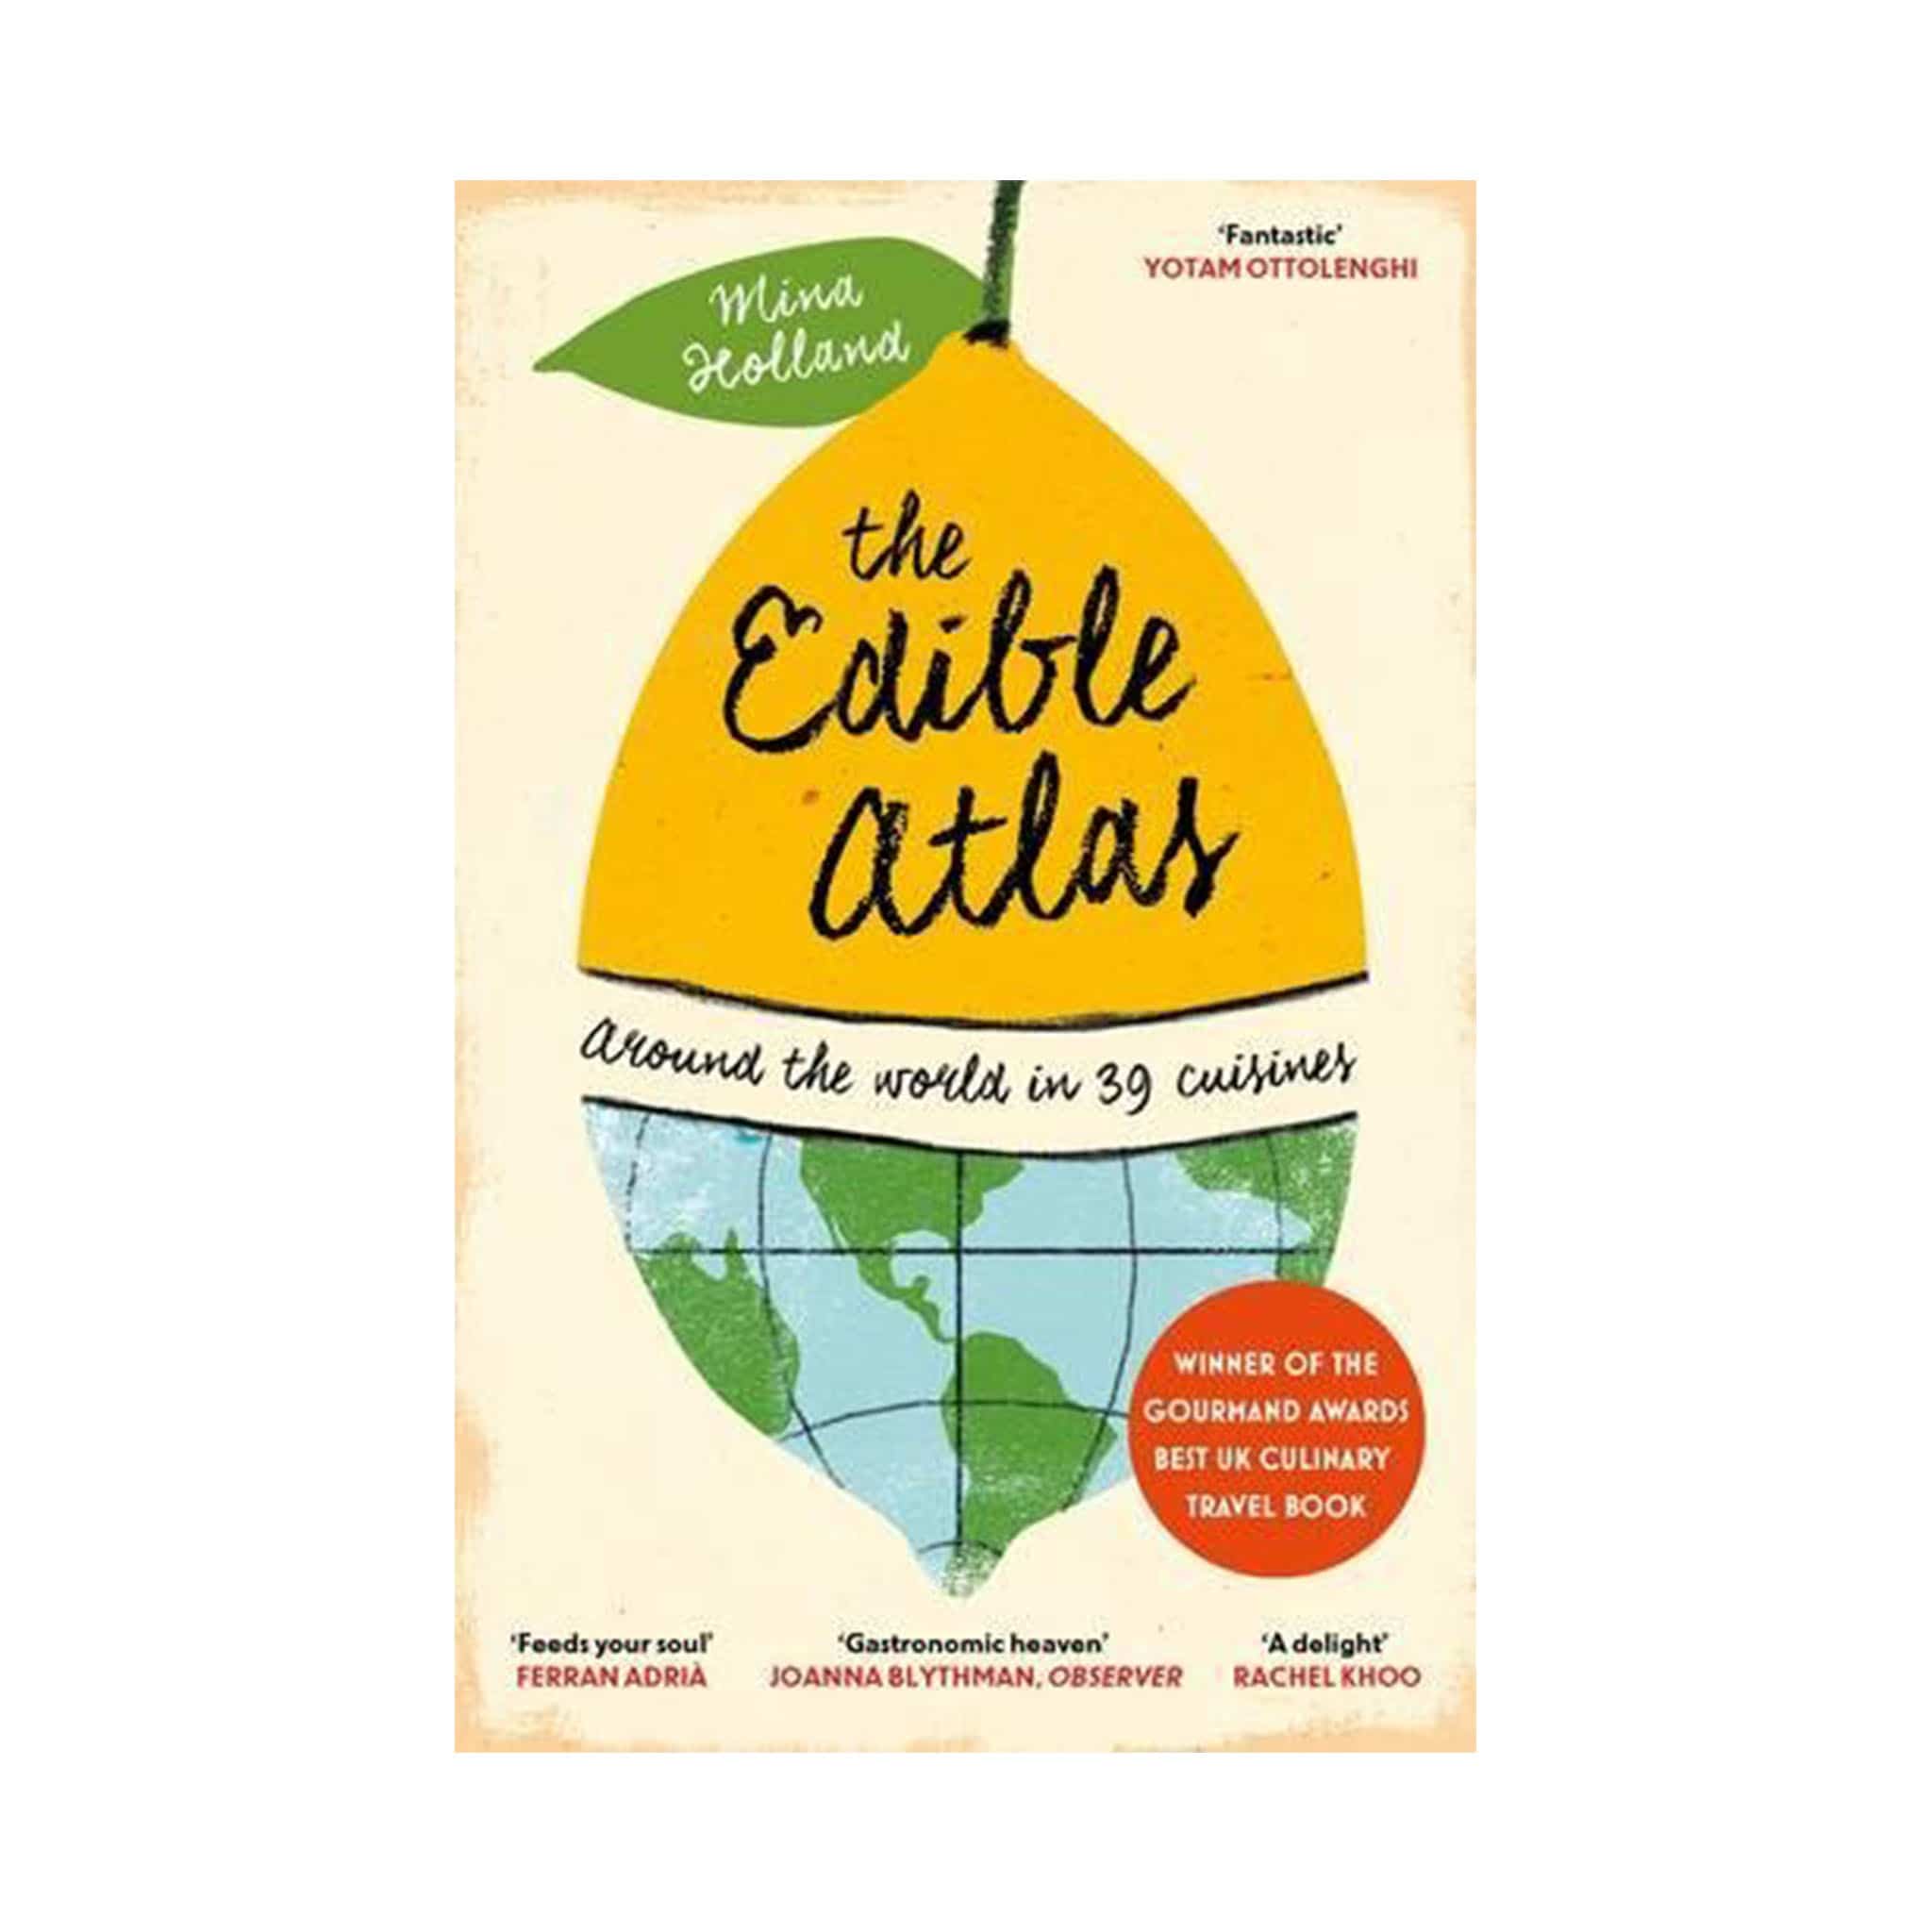 The Edible Atlas by Mina Holland